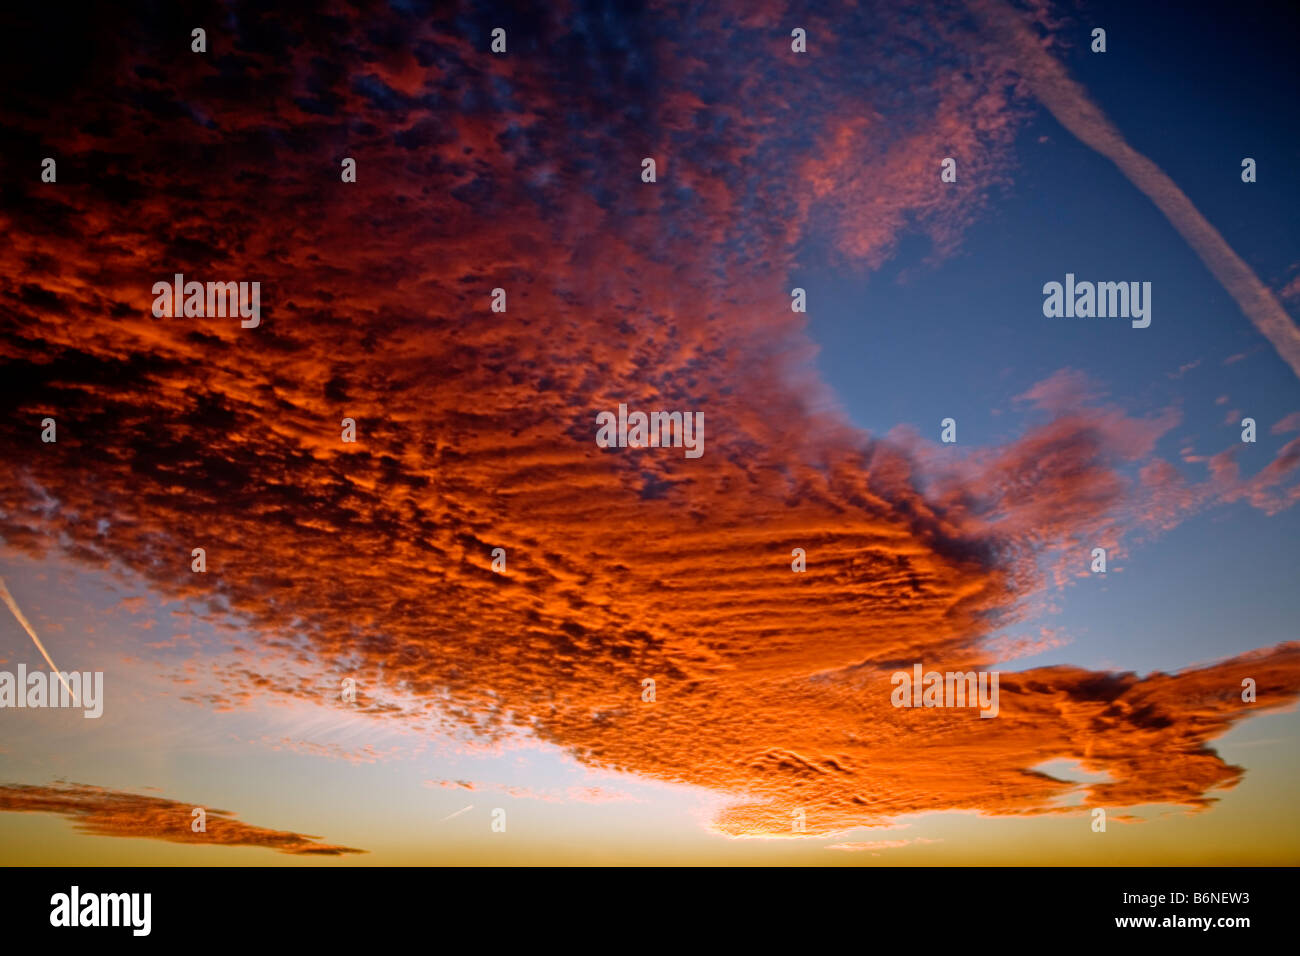 clouds at sunset conjunto de nubes al atardecer Stock Photo